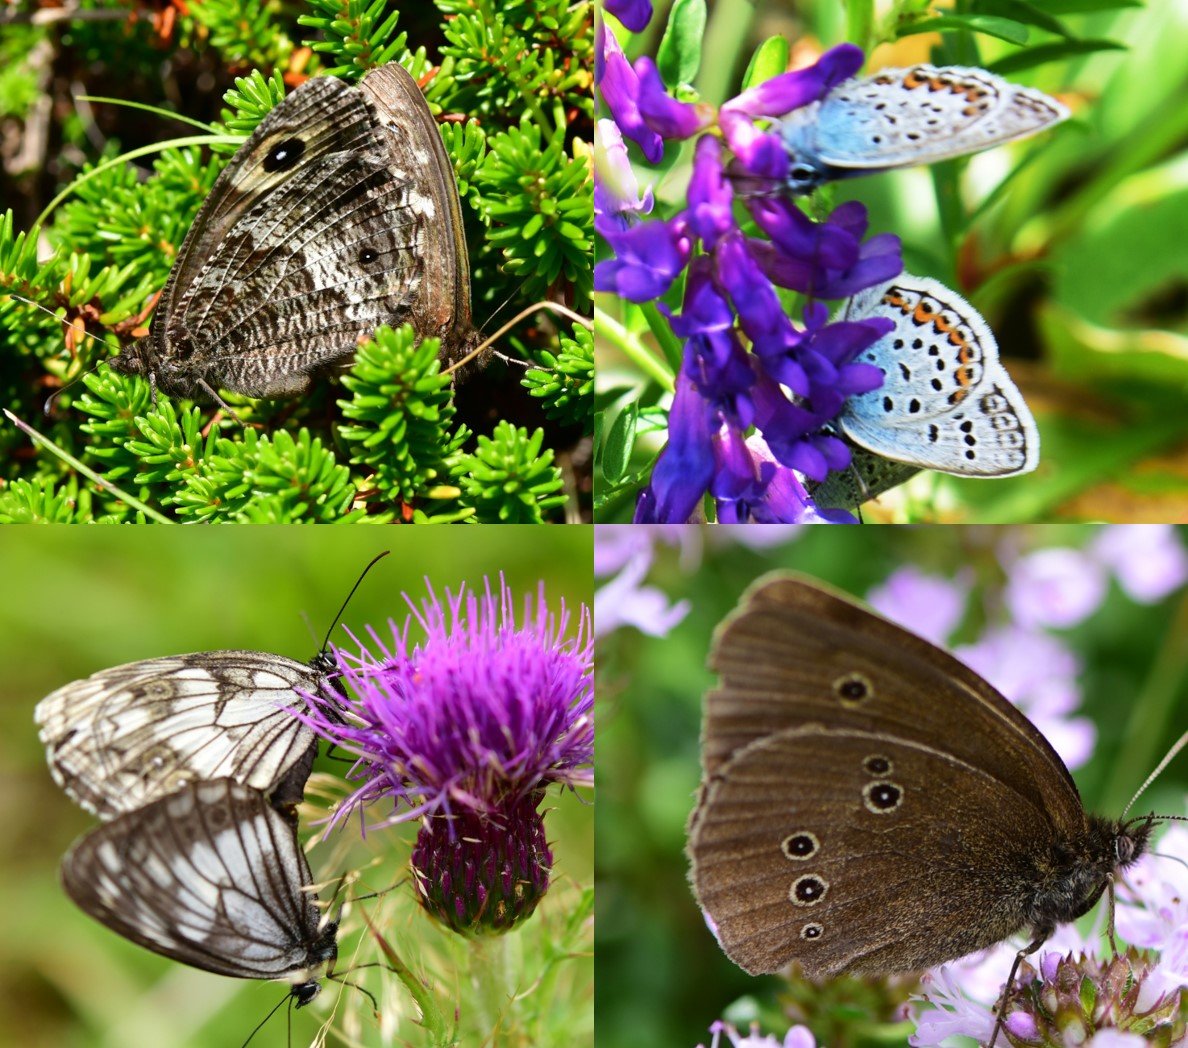 한라산에서 관찰된 나비로 (왼쪽 위부터 시계 방향으로) 산굴뚝나비, 산꼬마부전나비, 가락지나비, 조흰뱀눈나비. 좌명은 씨 제공